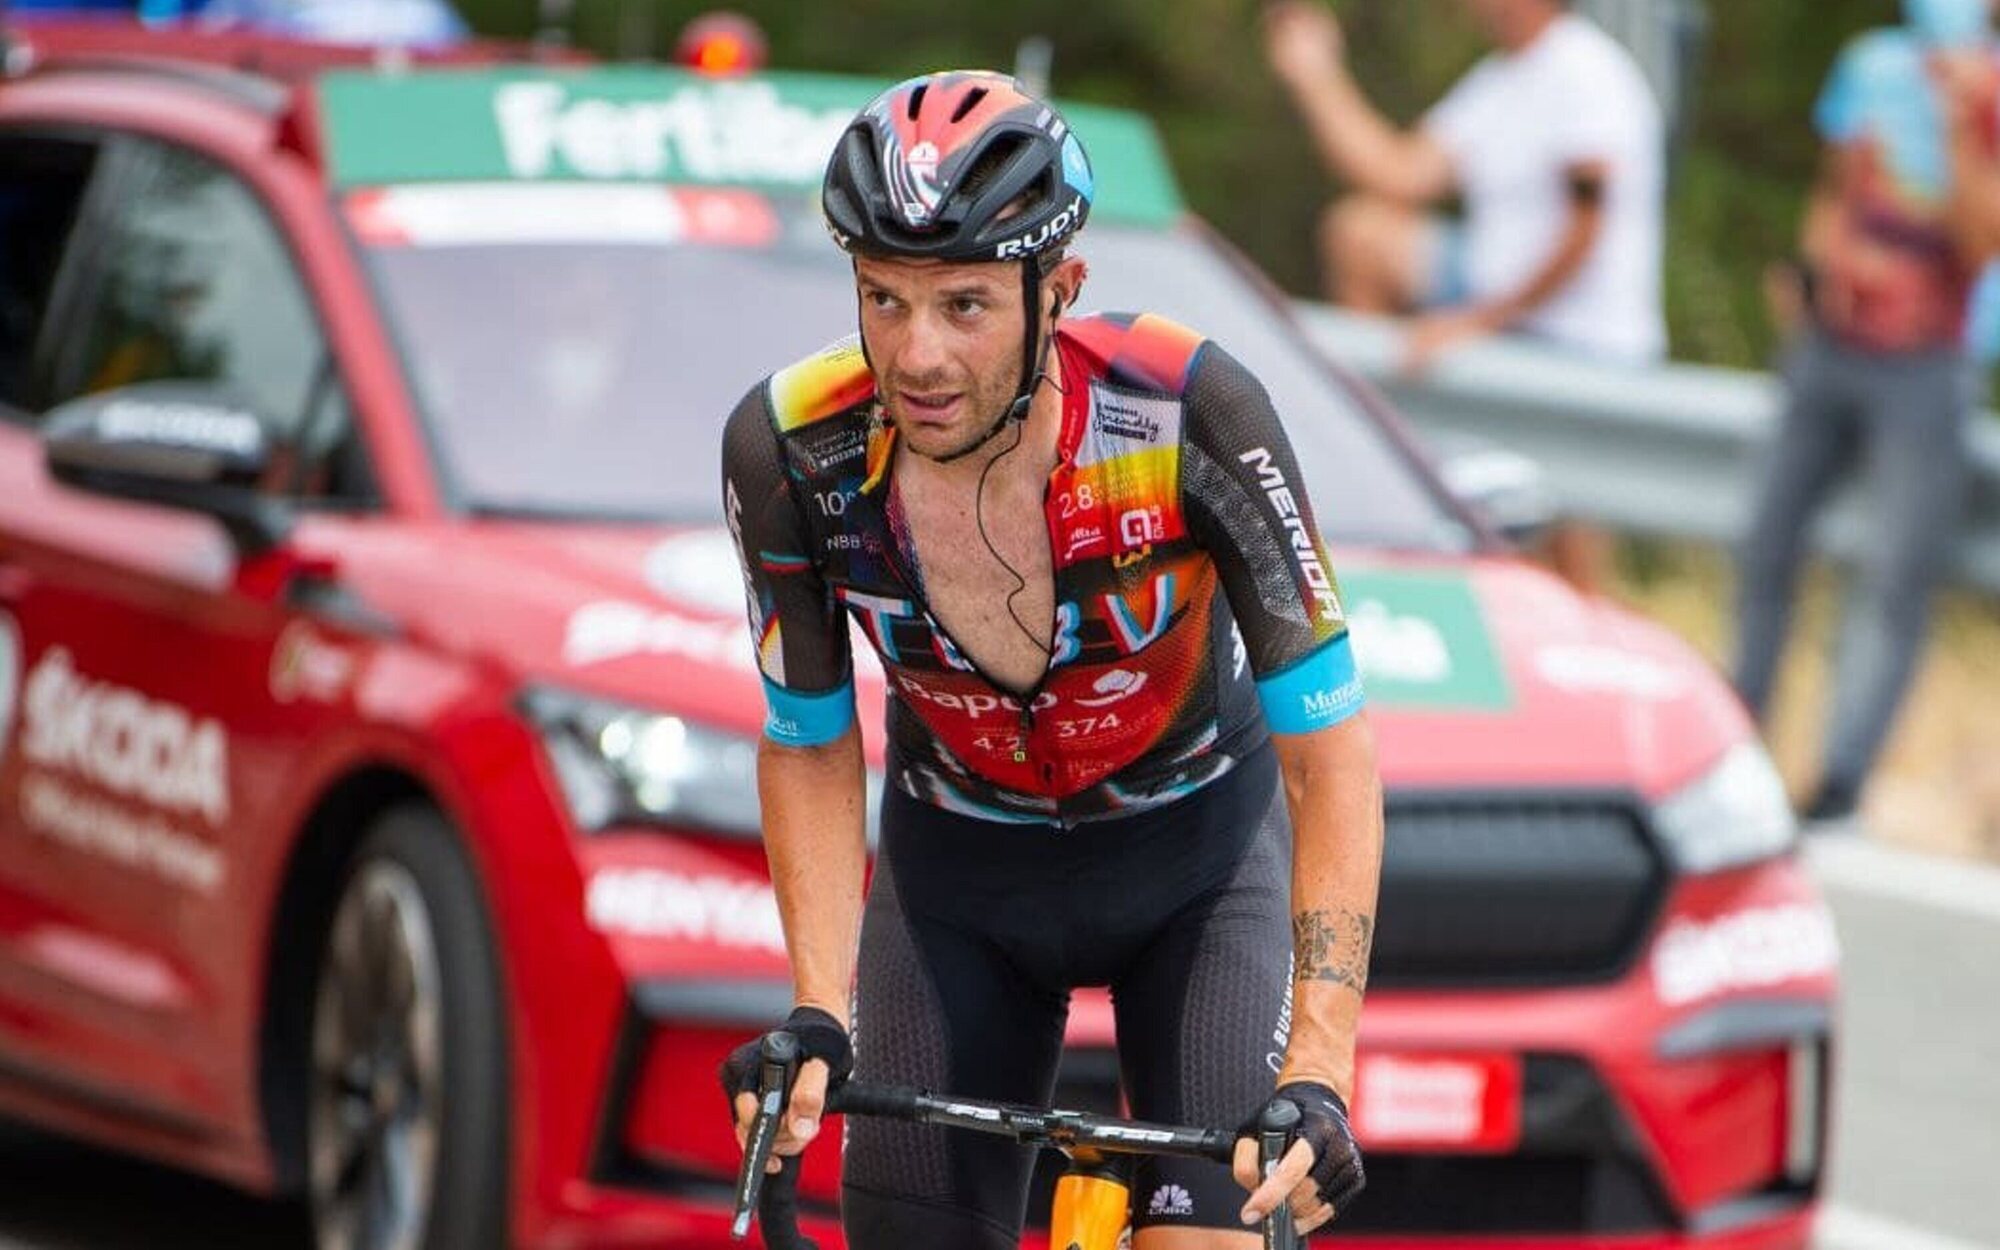 La Vuelta Ciclista (4,8%) se sube al podio con victoria sobre "Don erre que erre" (4,4%)